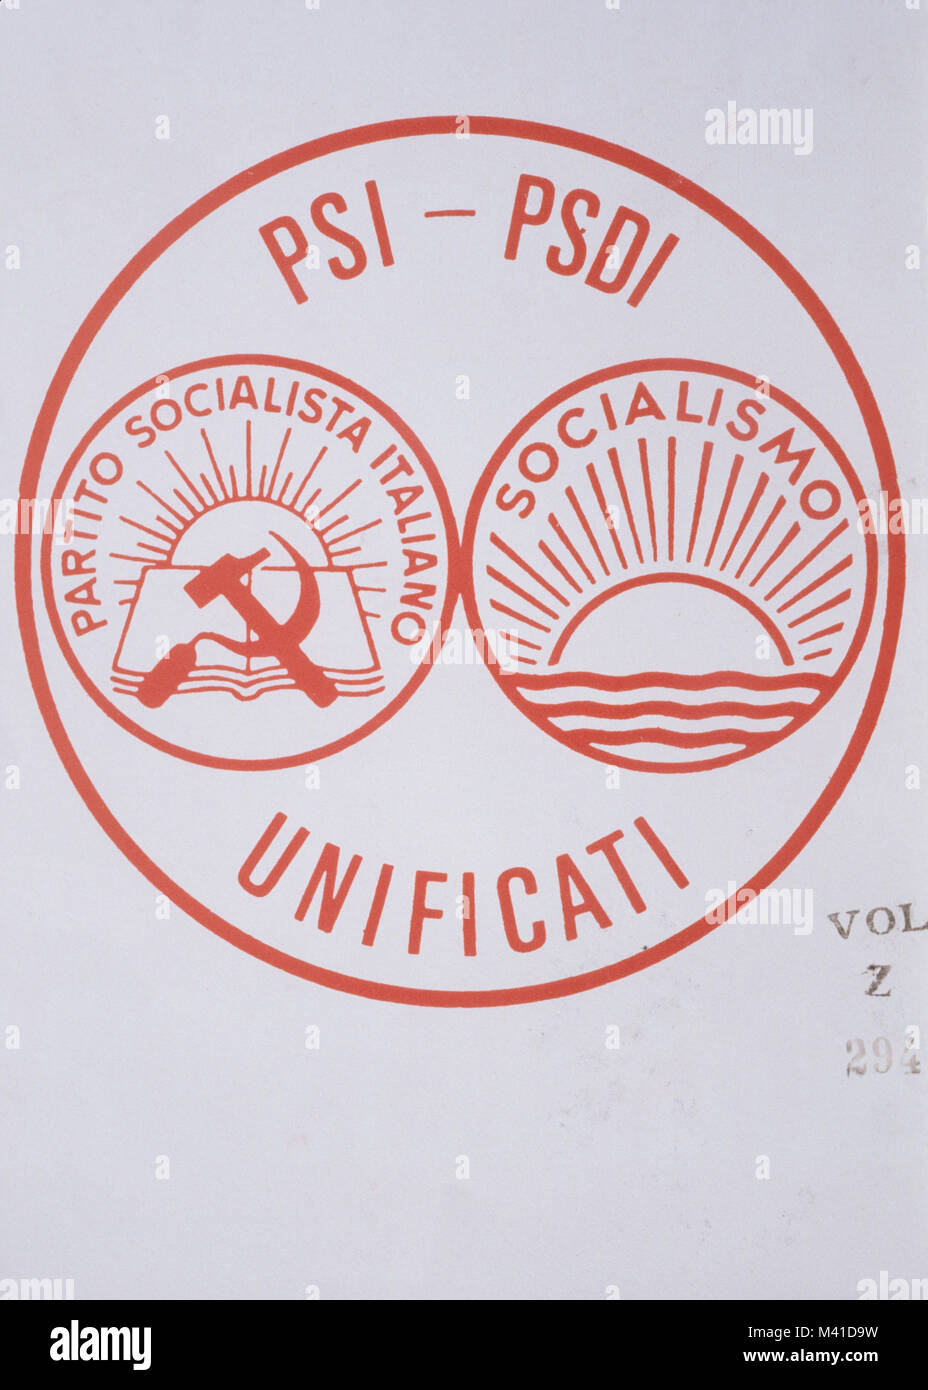 PSI-psdi Unificati, Partito Socialista Unificato, PSU, 1966 Stockfoto